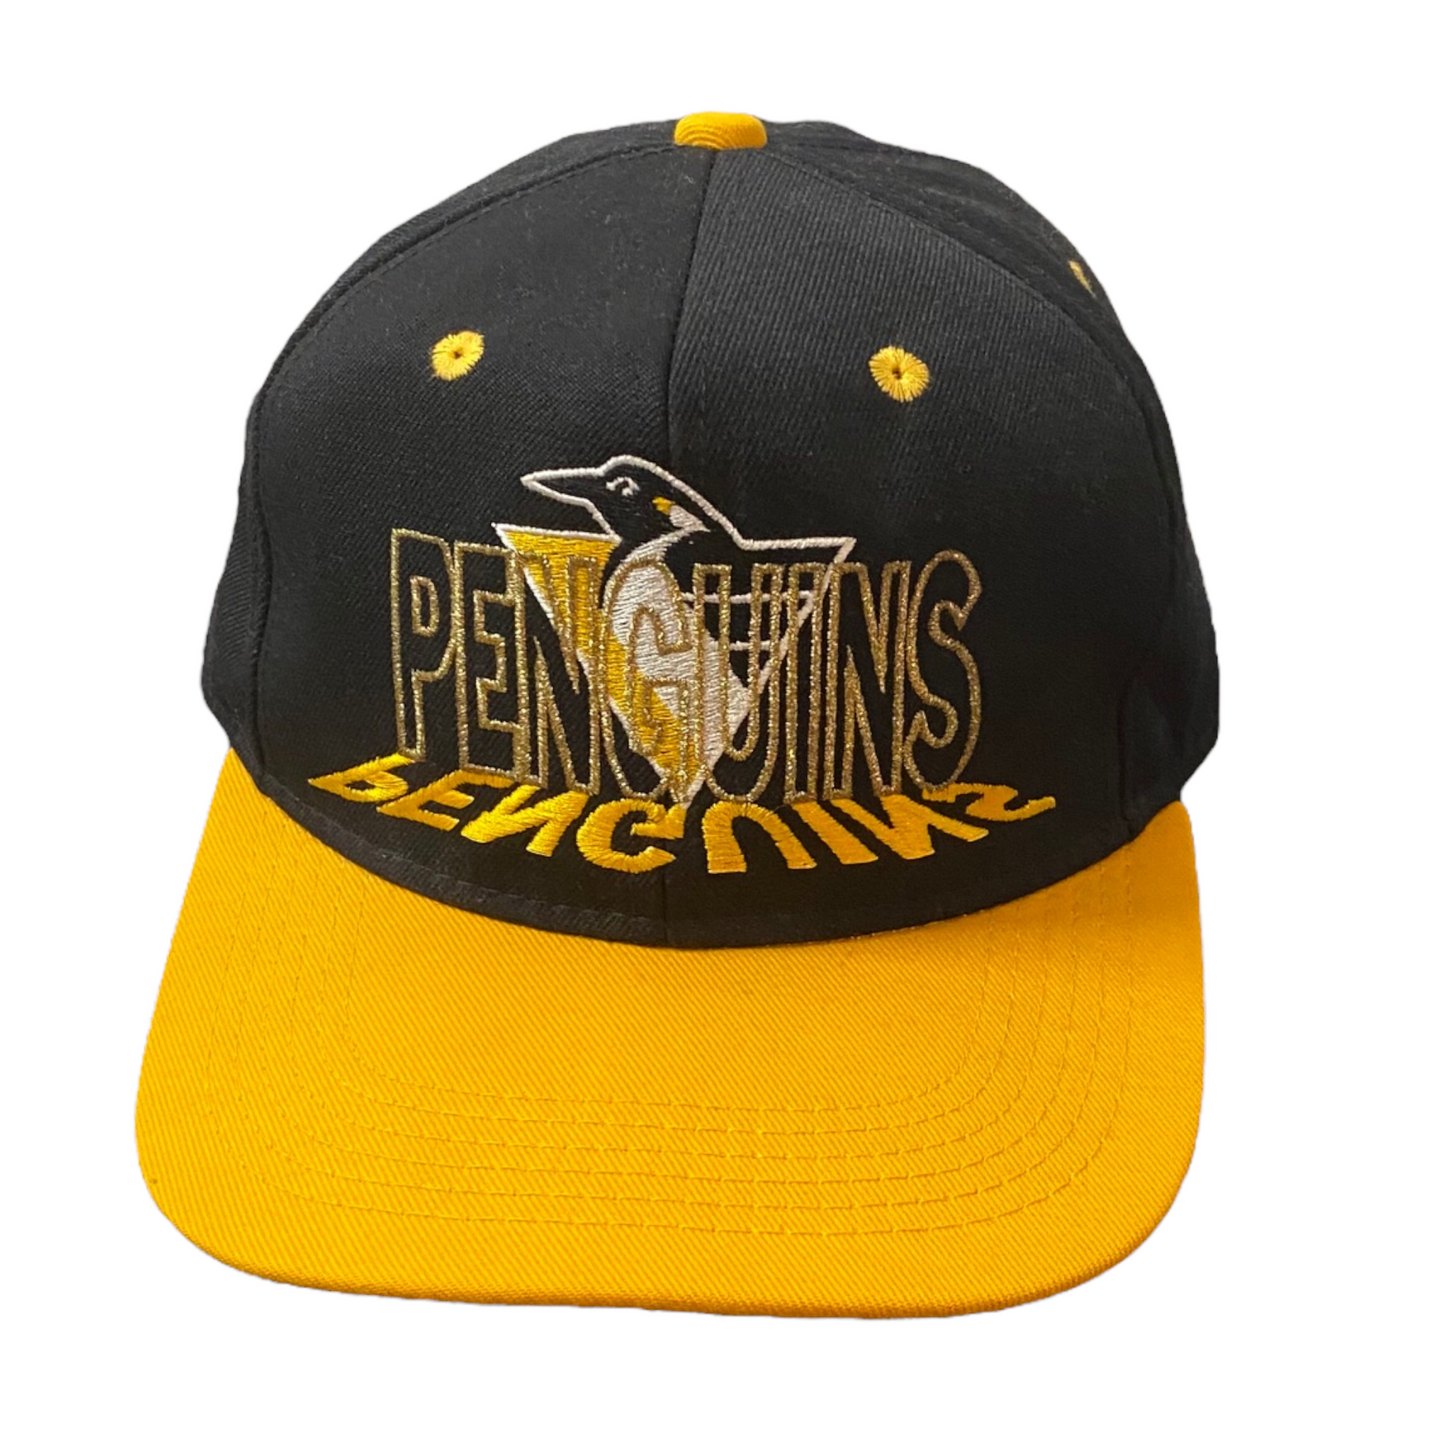 Pittsburgh Penguins Adjustable Hat